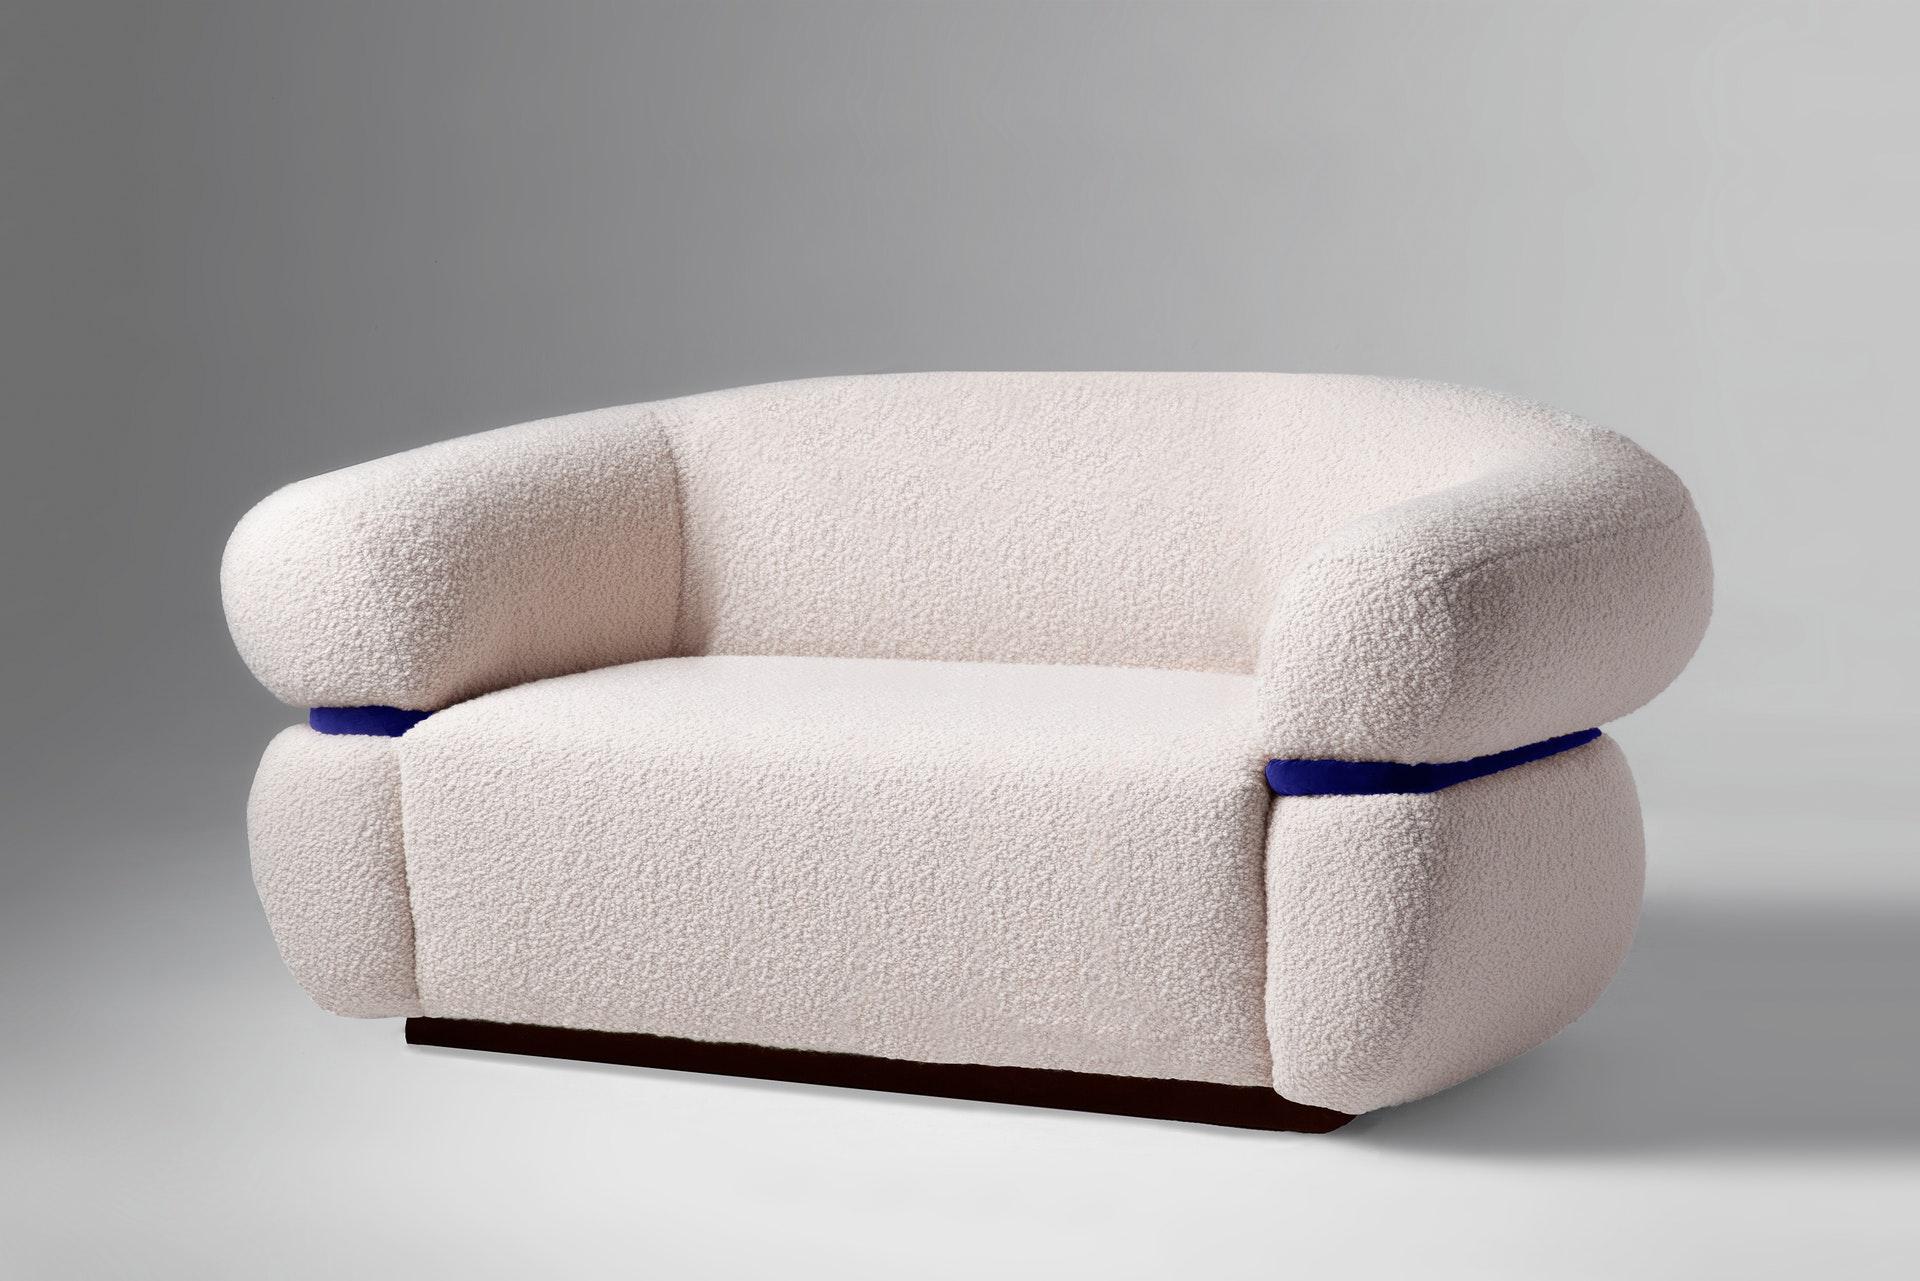  Wie eine warme Umarmung empfängt Sie das Malibu Sofa zum Verweilen und Entspannen. Als gehobene Hommage an das goldene Zeitalter des Midcentury-Designs und der organischen Architektur strahlt er durch seine ungewöhnlichen Proportionen und starken